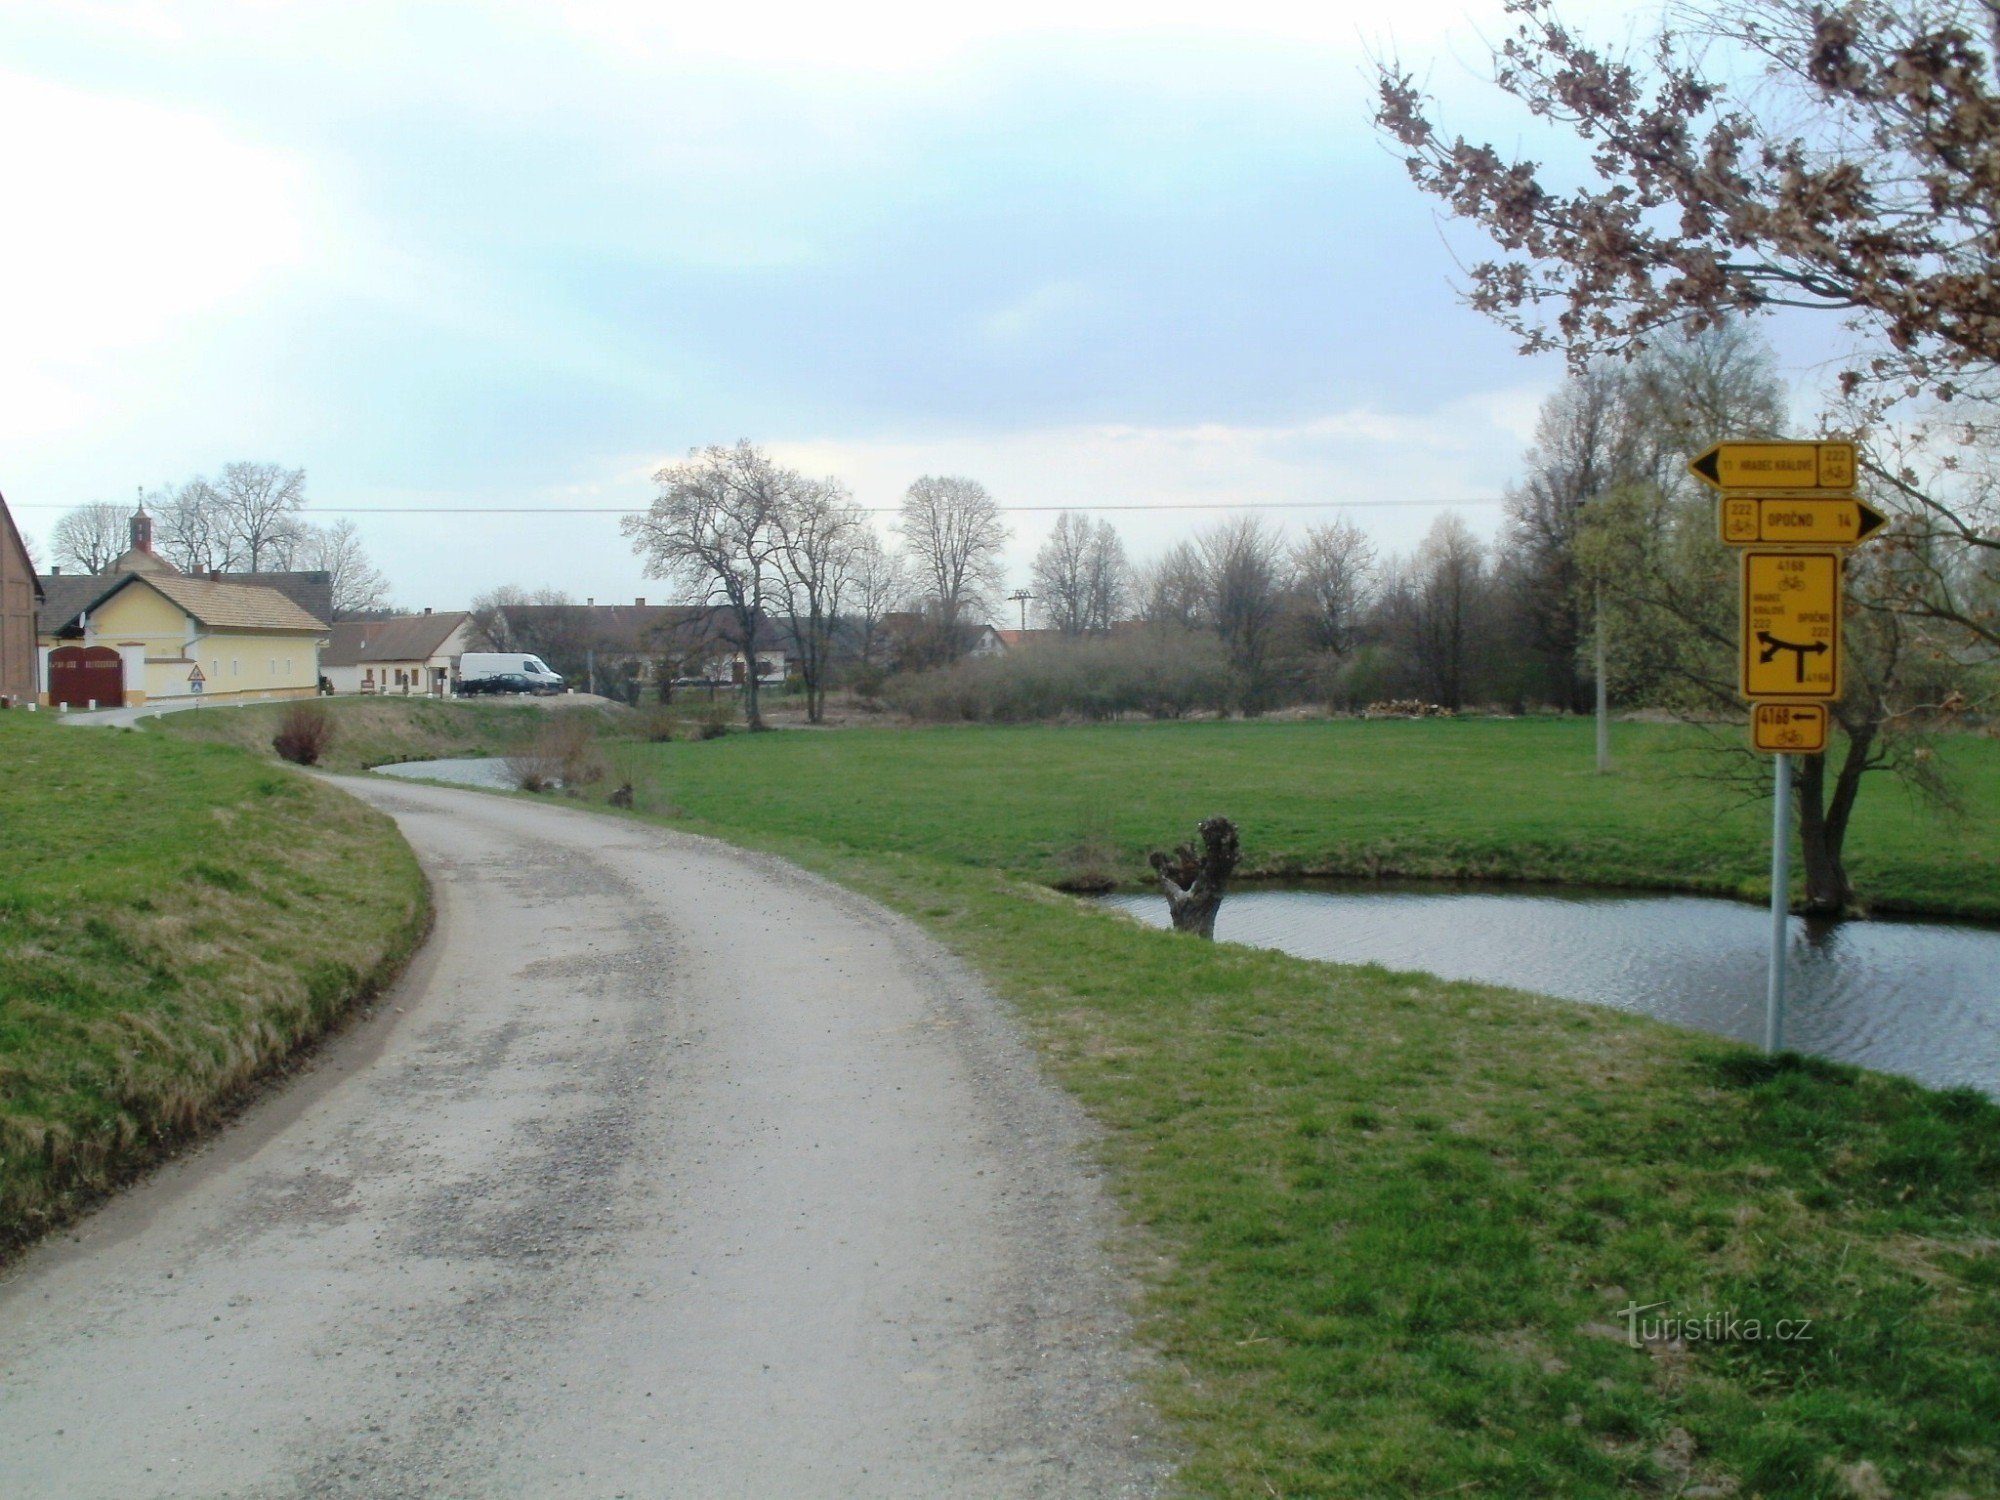 露天博物馆附近的自行车旅游路标 Krňovice